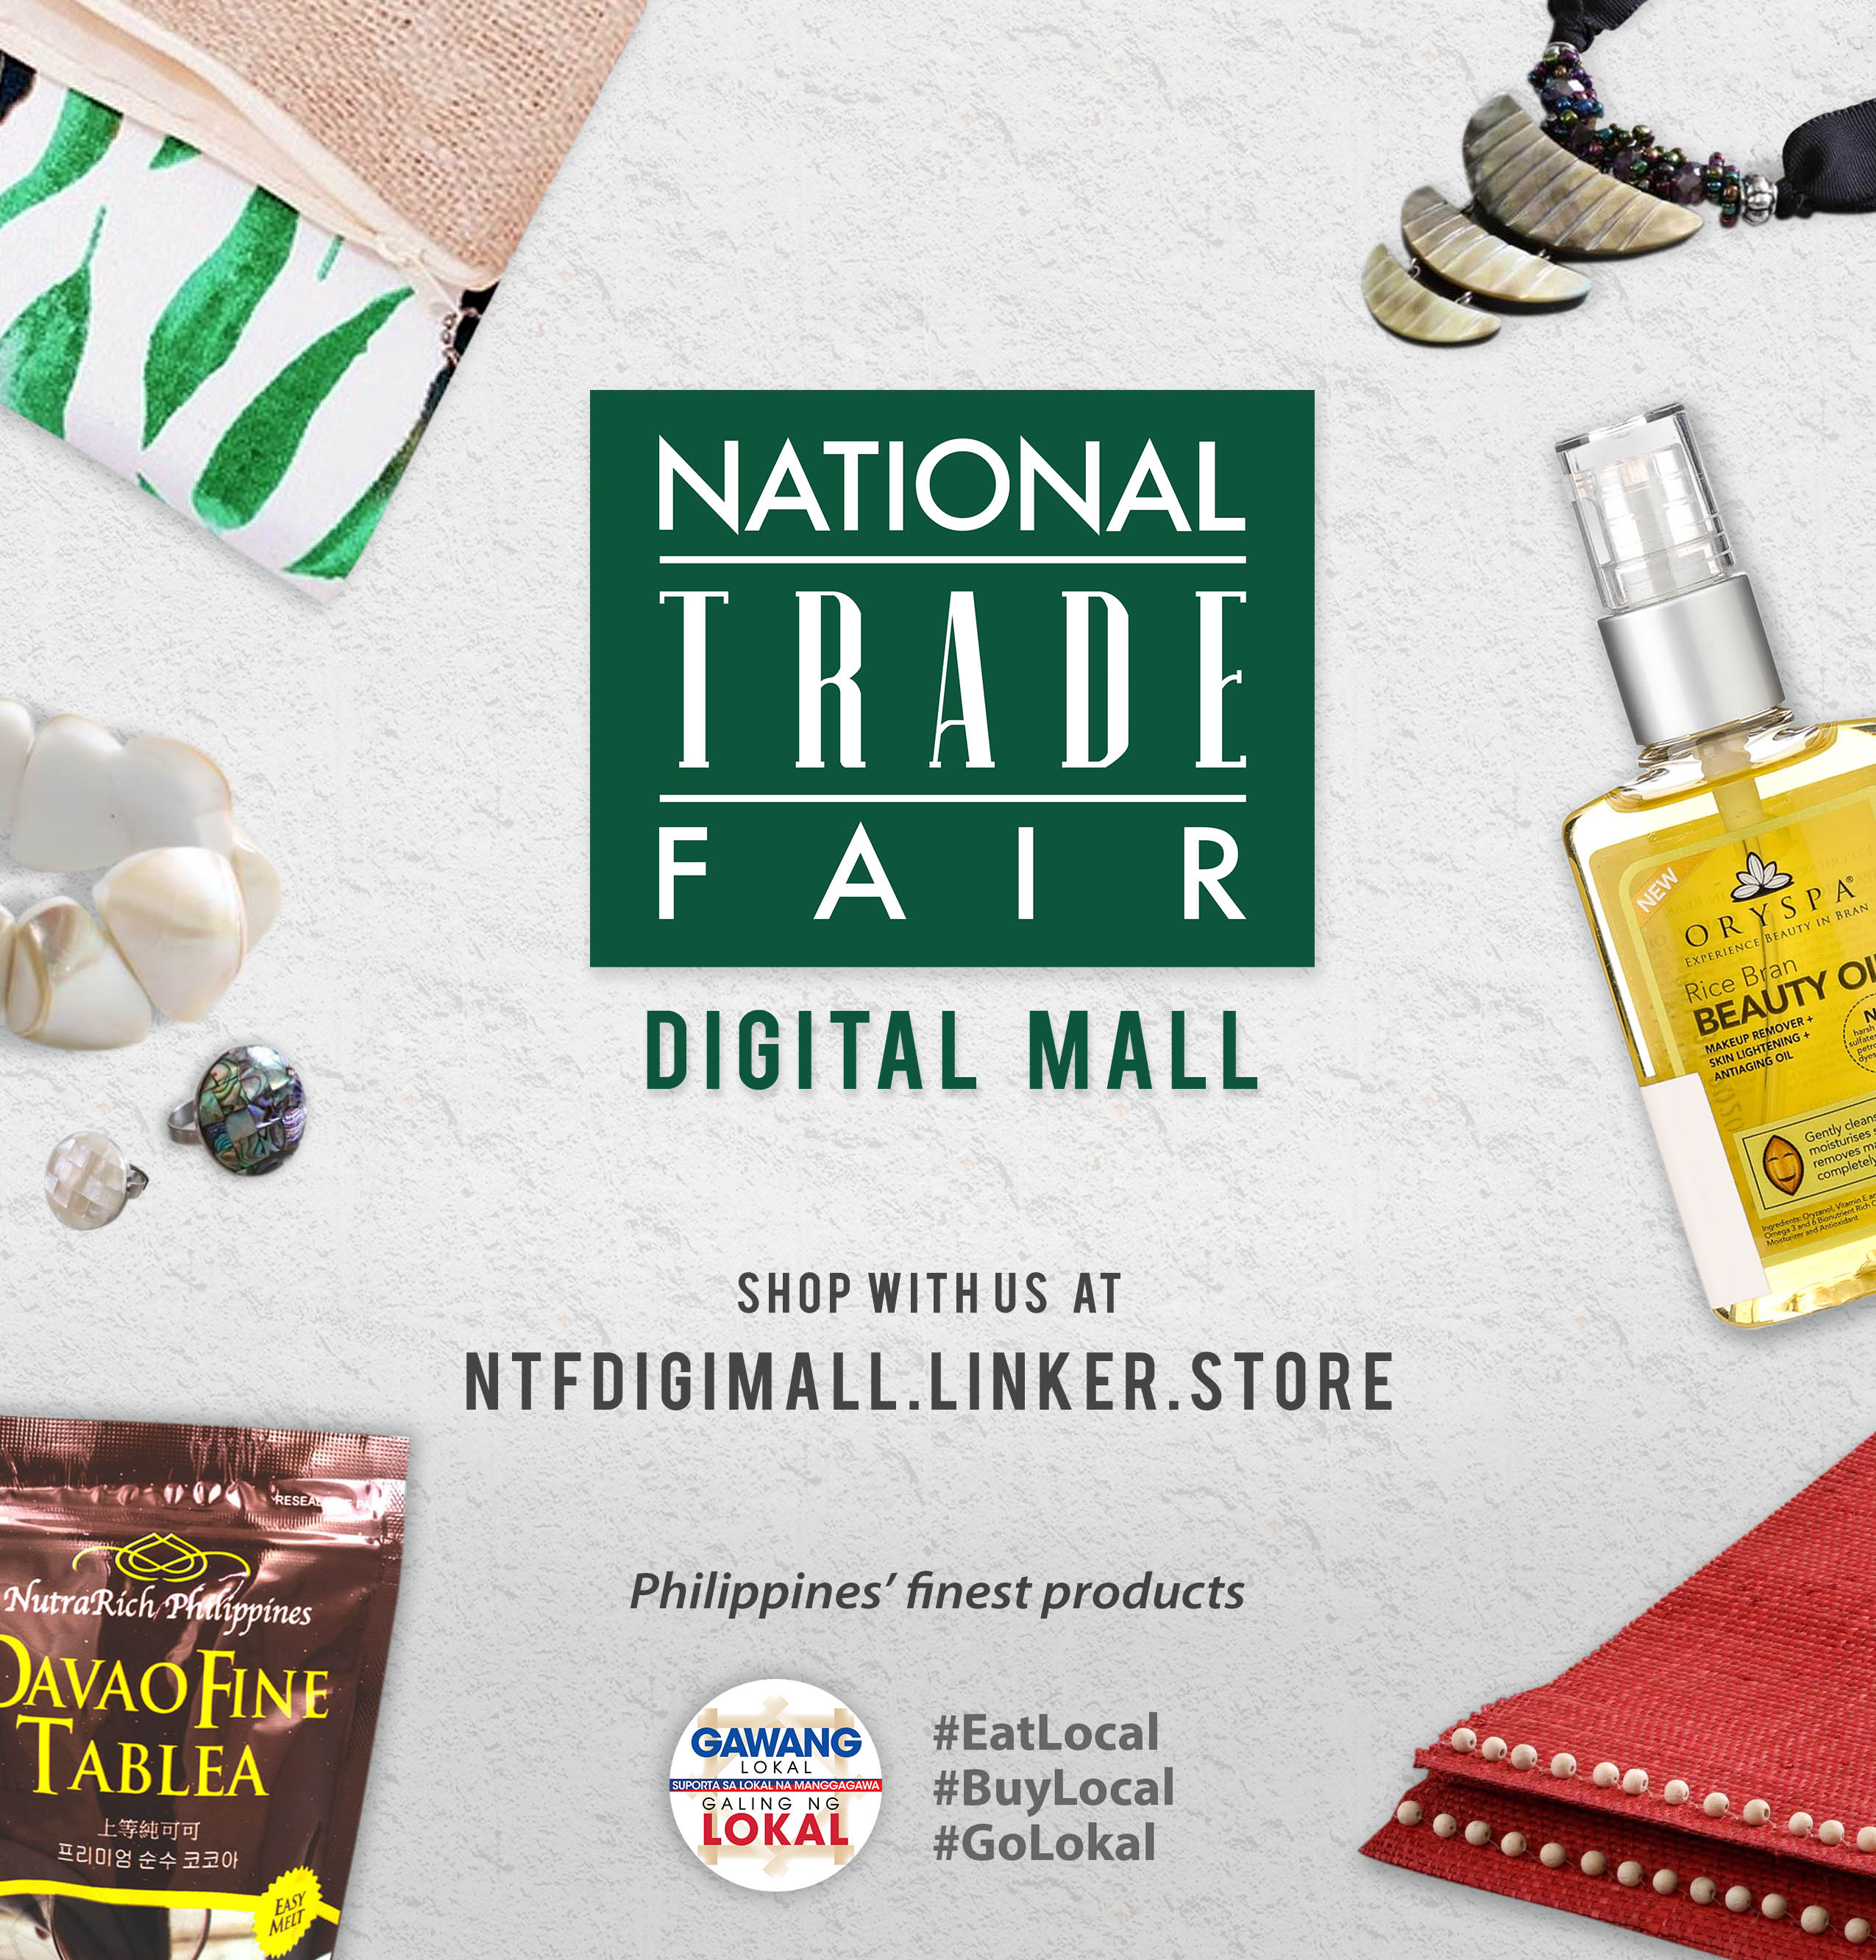 DTI launches National Trade Fair Digital Mall